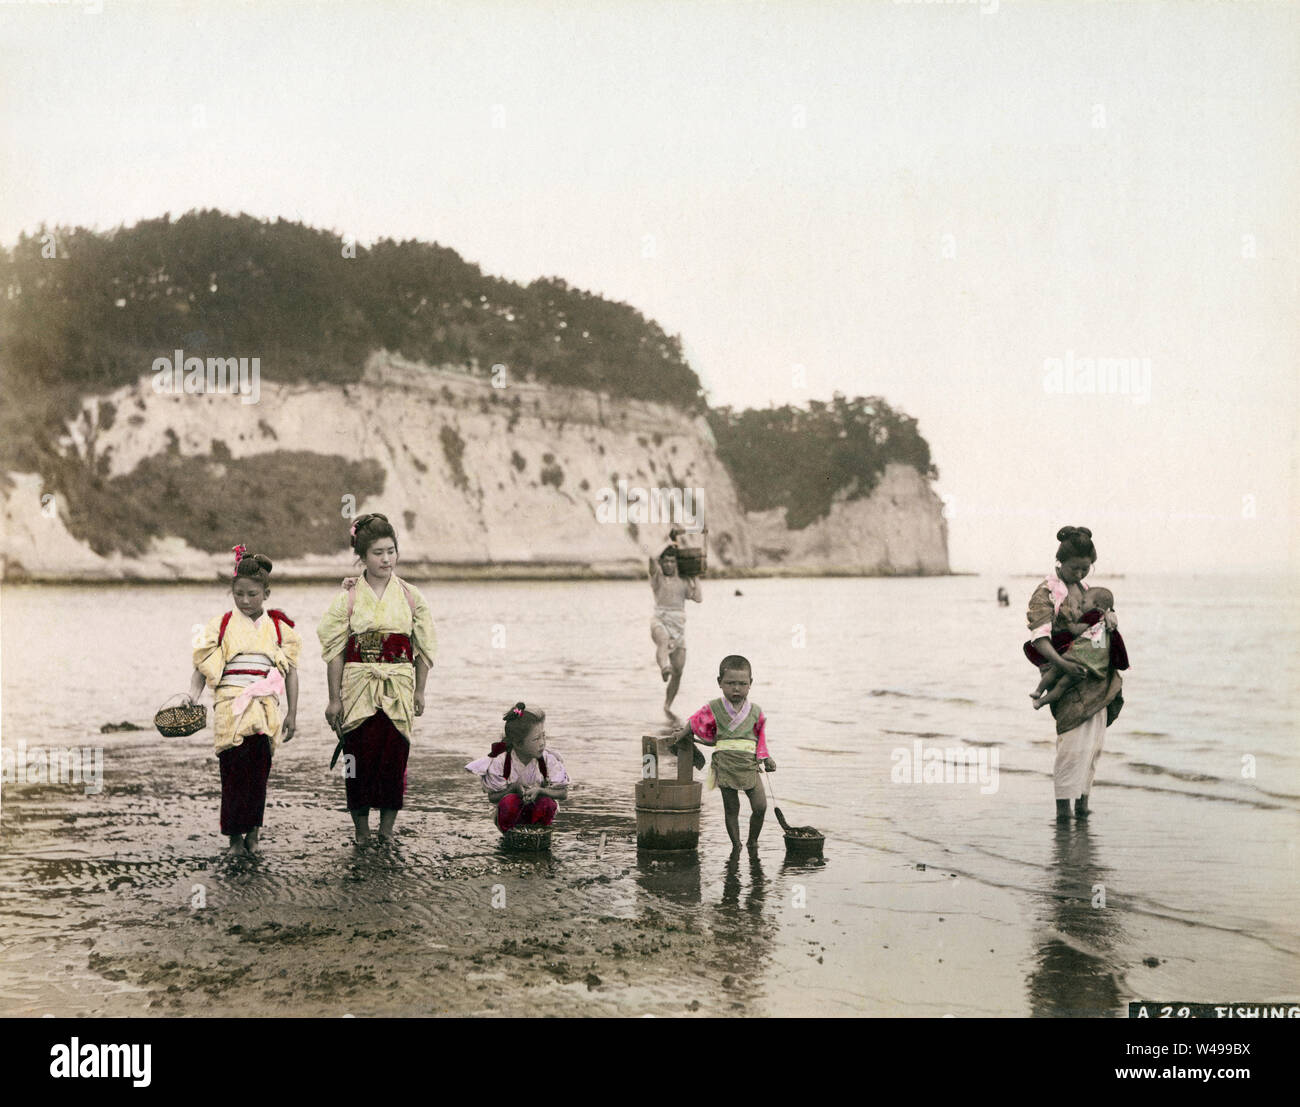 [1880s Japan - Japanische Frauen Angeln] - Frauen und Kinder im Kimono und traditionelle Frisur sammeln Muscheln bei Ebbe an Honmoku in Yokohama, Kanagawa Präfektur. Sie haben Ihre kimono nach oben gezogen. 19 Vintage albumen Foto. Stockfoto